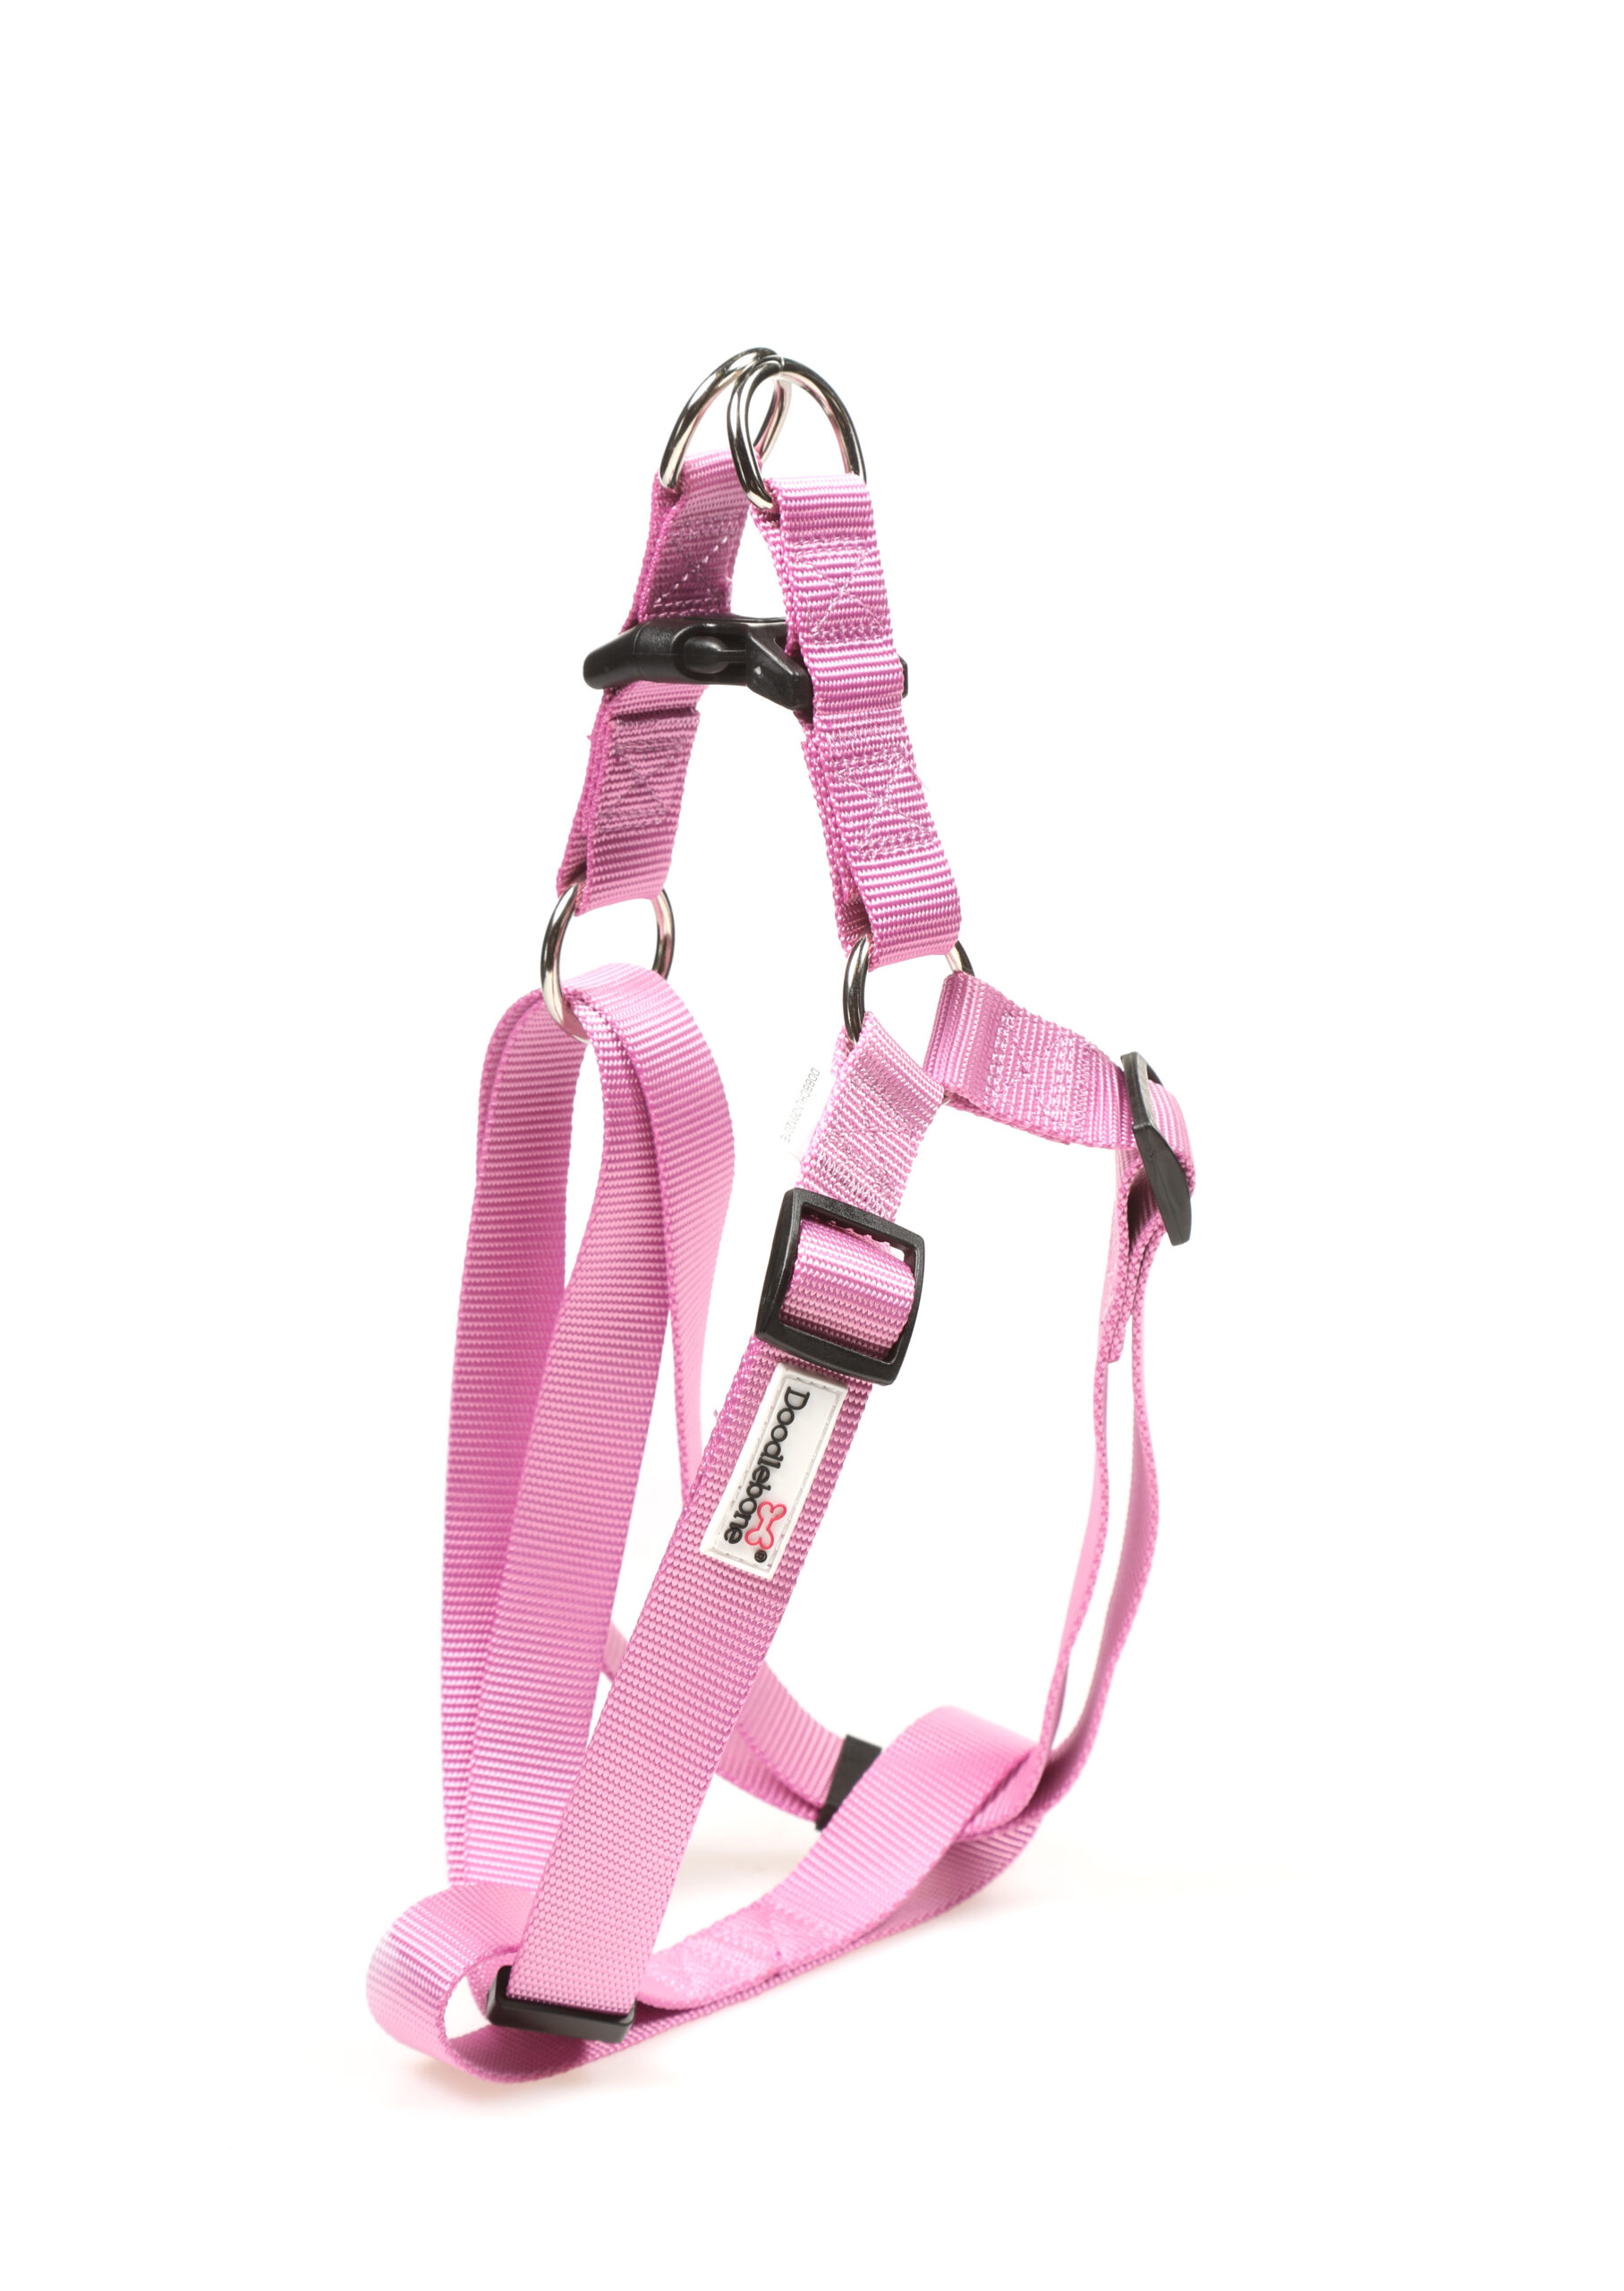 Doodlebone Light Pink Adjustable Strap Dog Harness